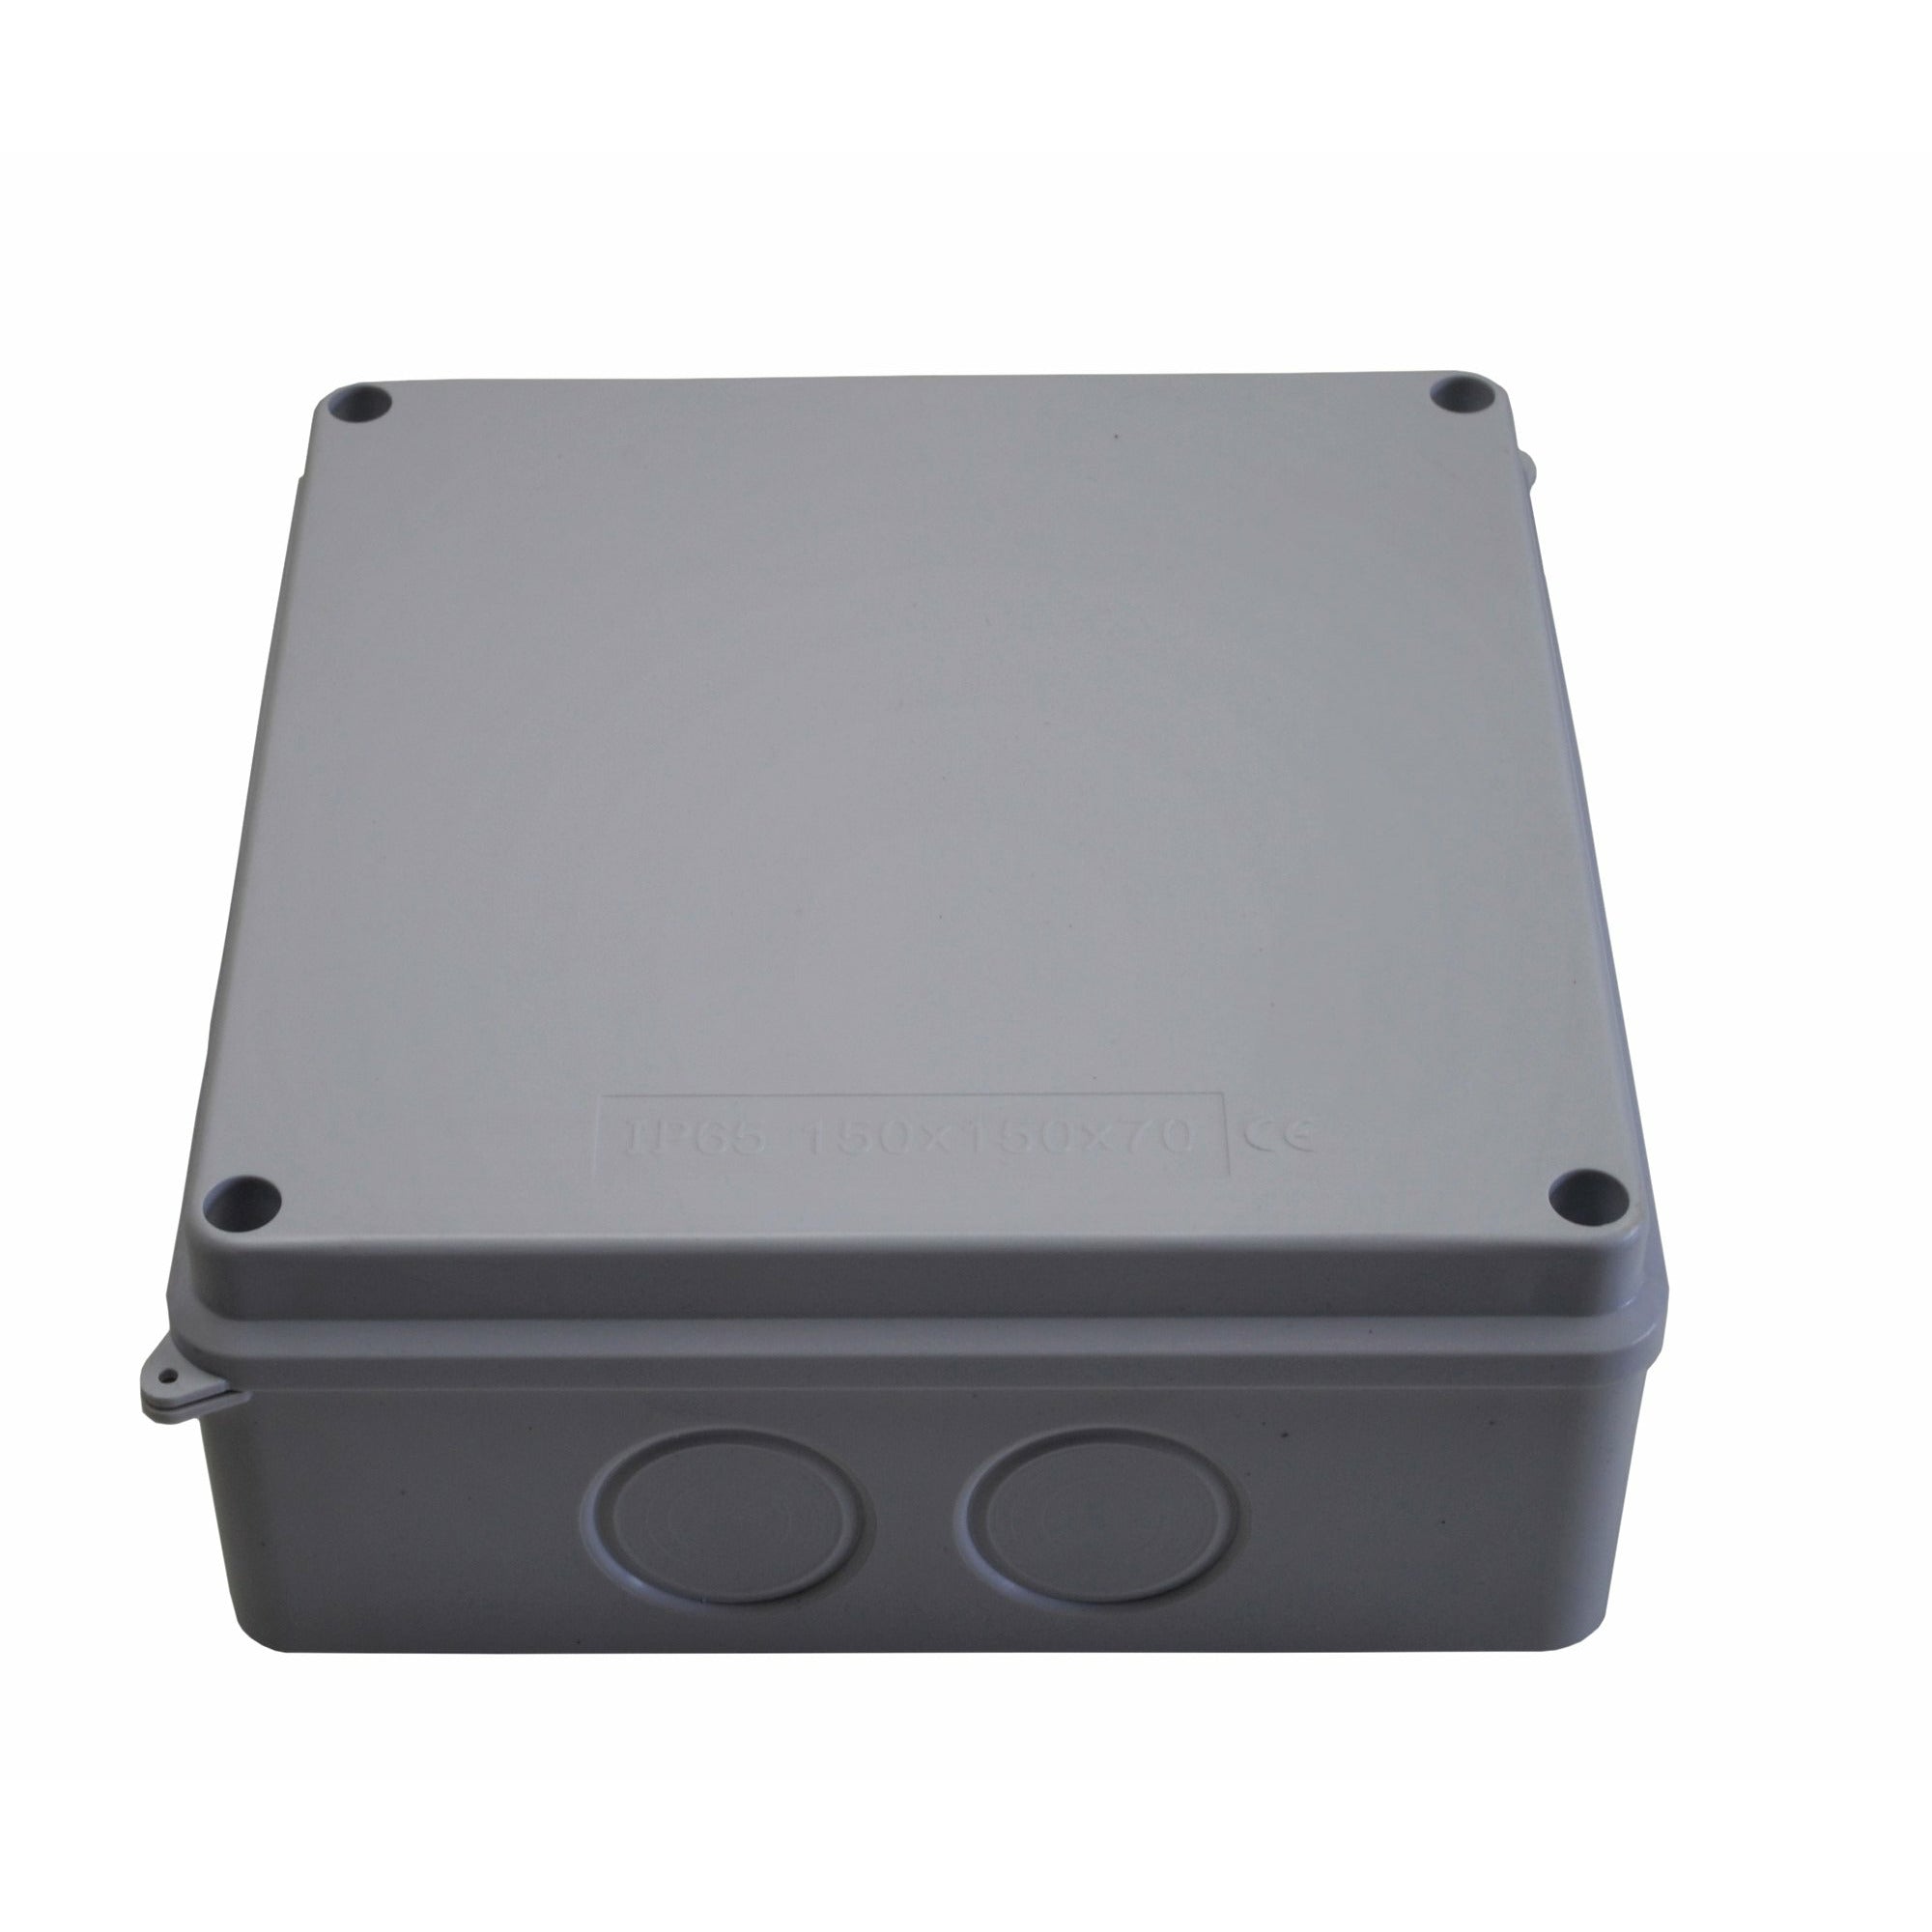 150x150x70 mm no grommet IP65 Waterproof Junction Box